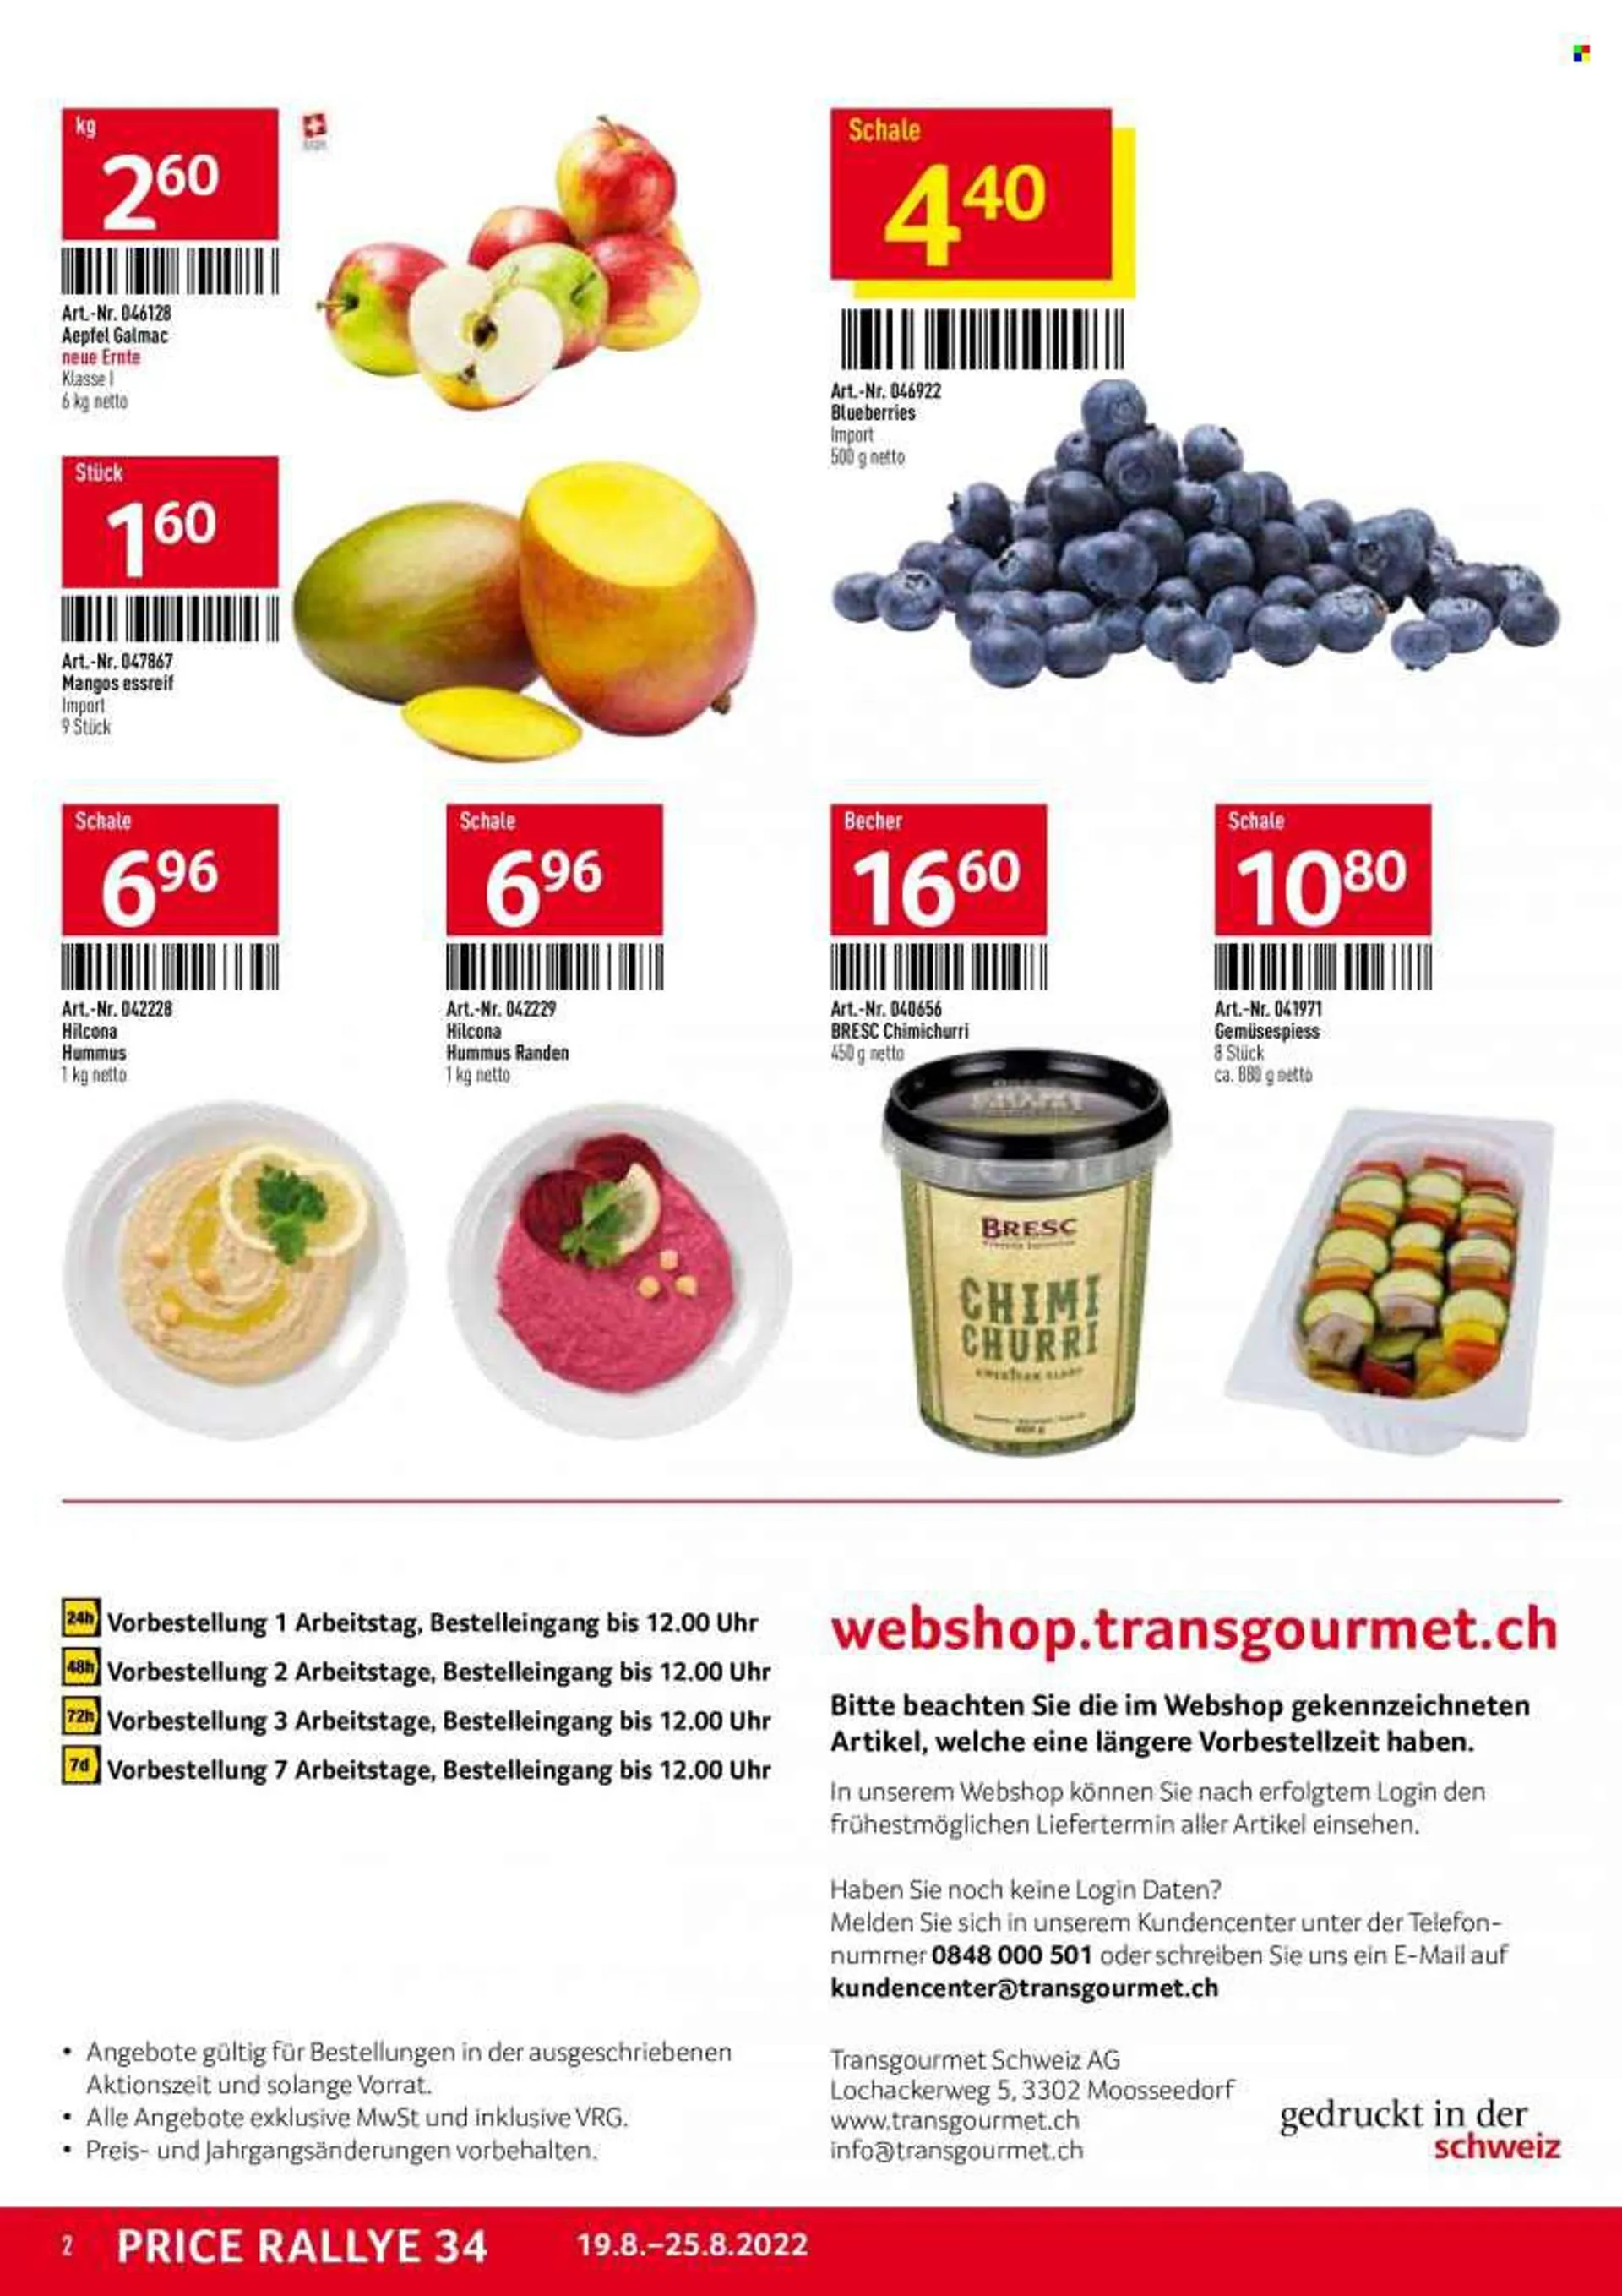 Prospekte TransGourmet - 19.8.2022 - 25.8.2022 - Produkte in Aktion - Mango, Hummus. Seite 2.